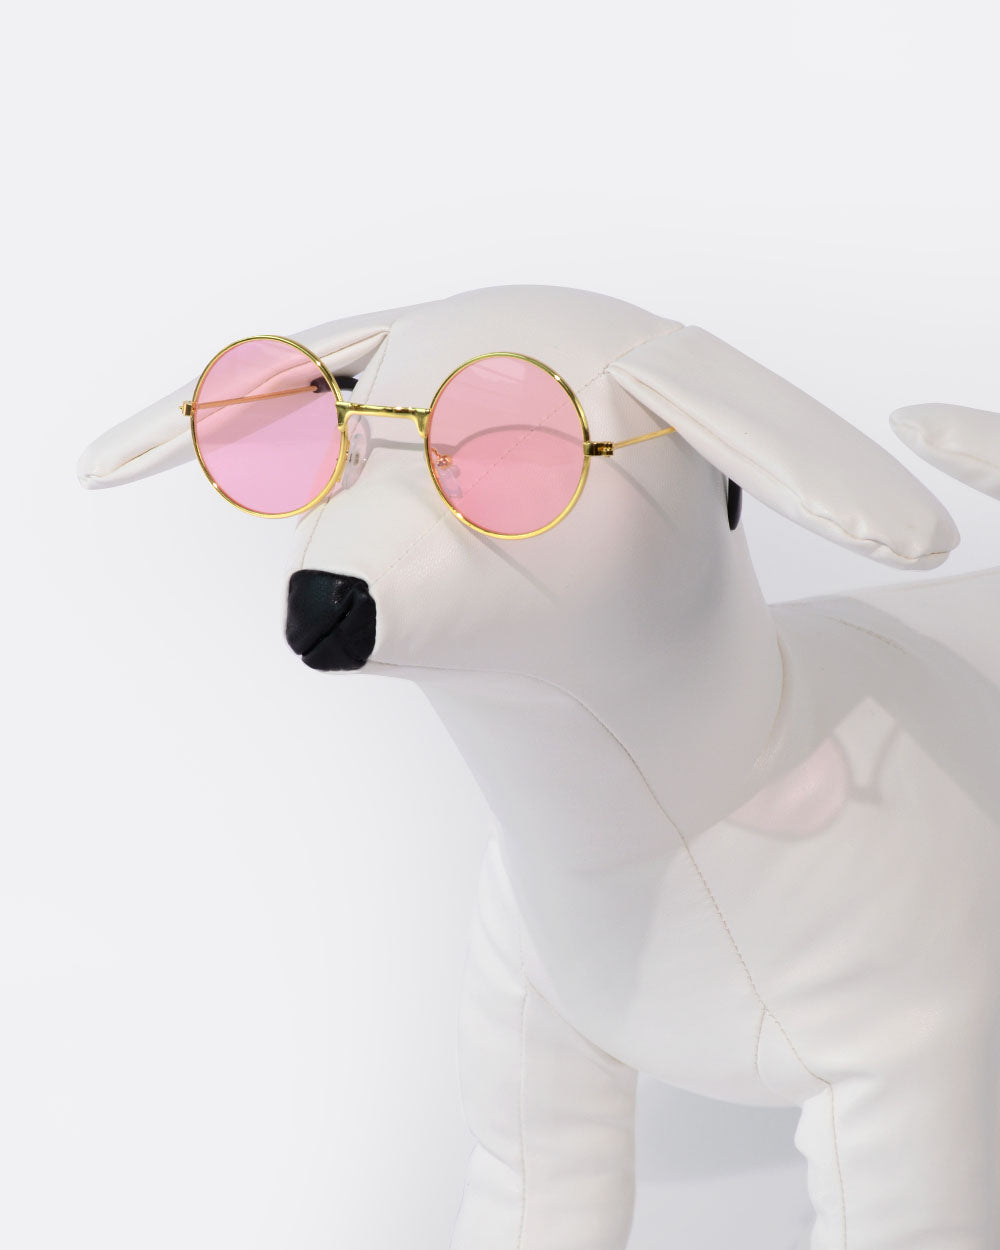 有色鏡片狗眼鏡 - 粉紅色